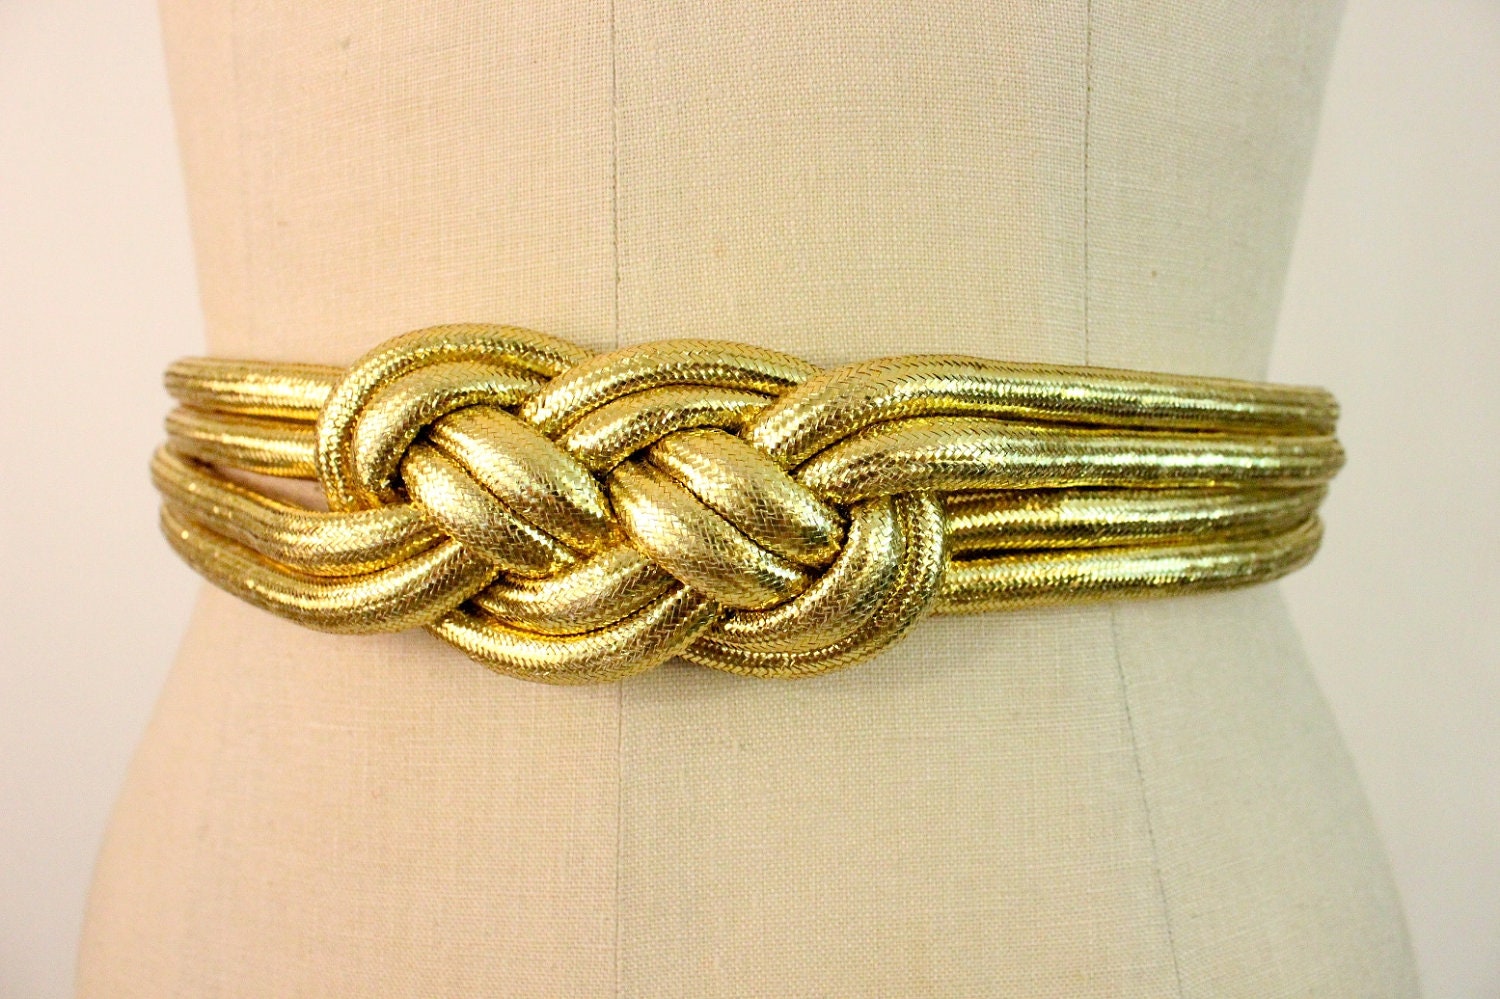 golden rope